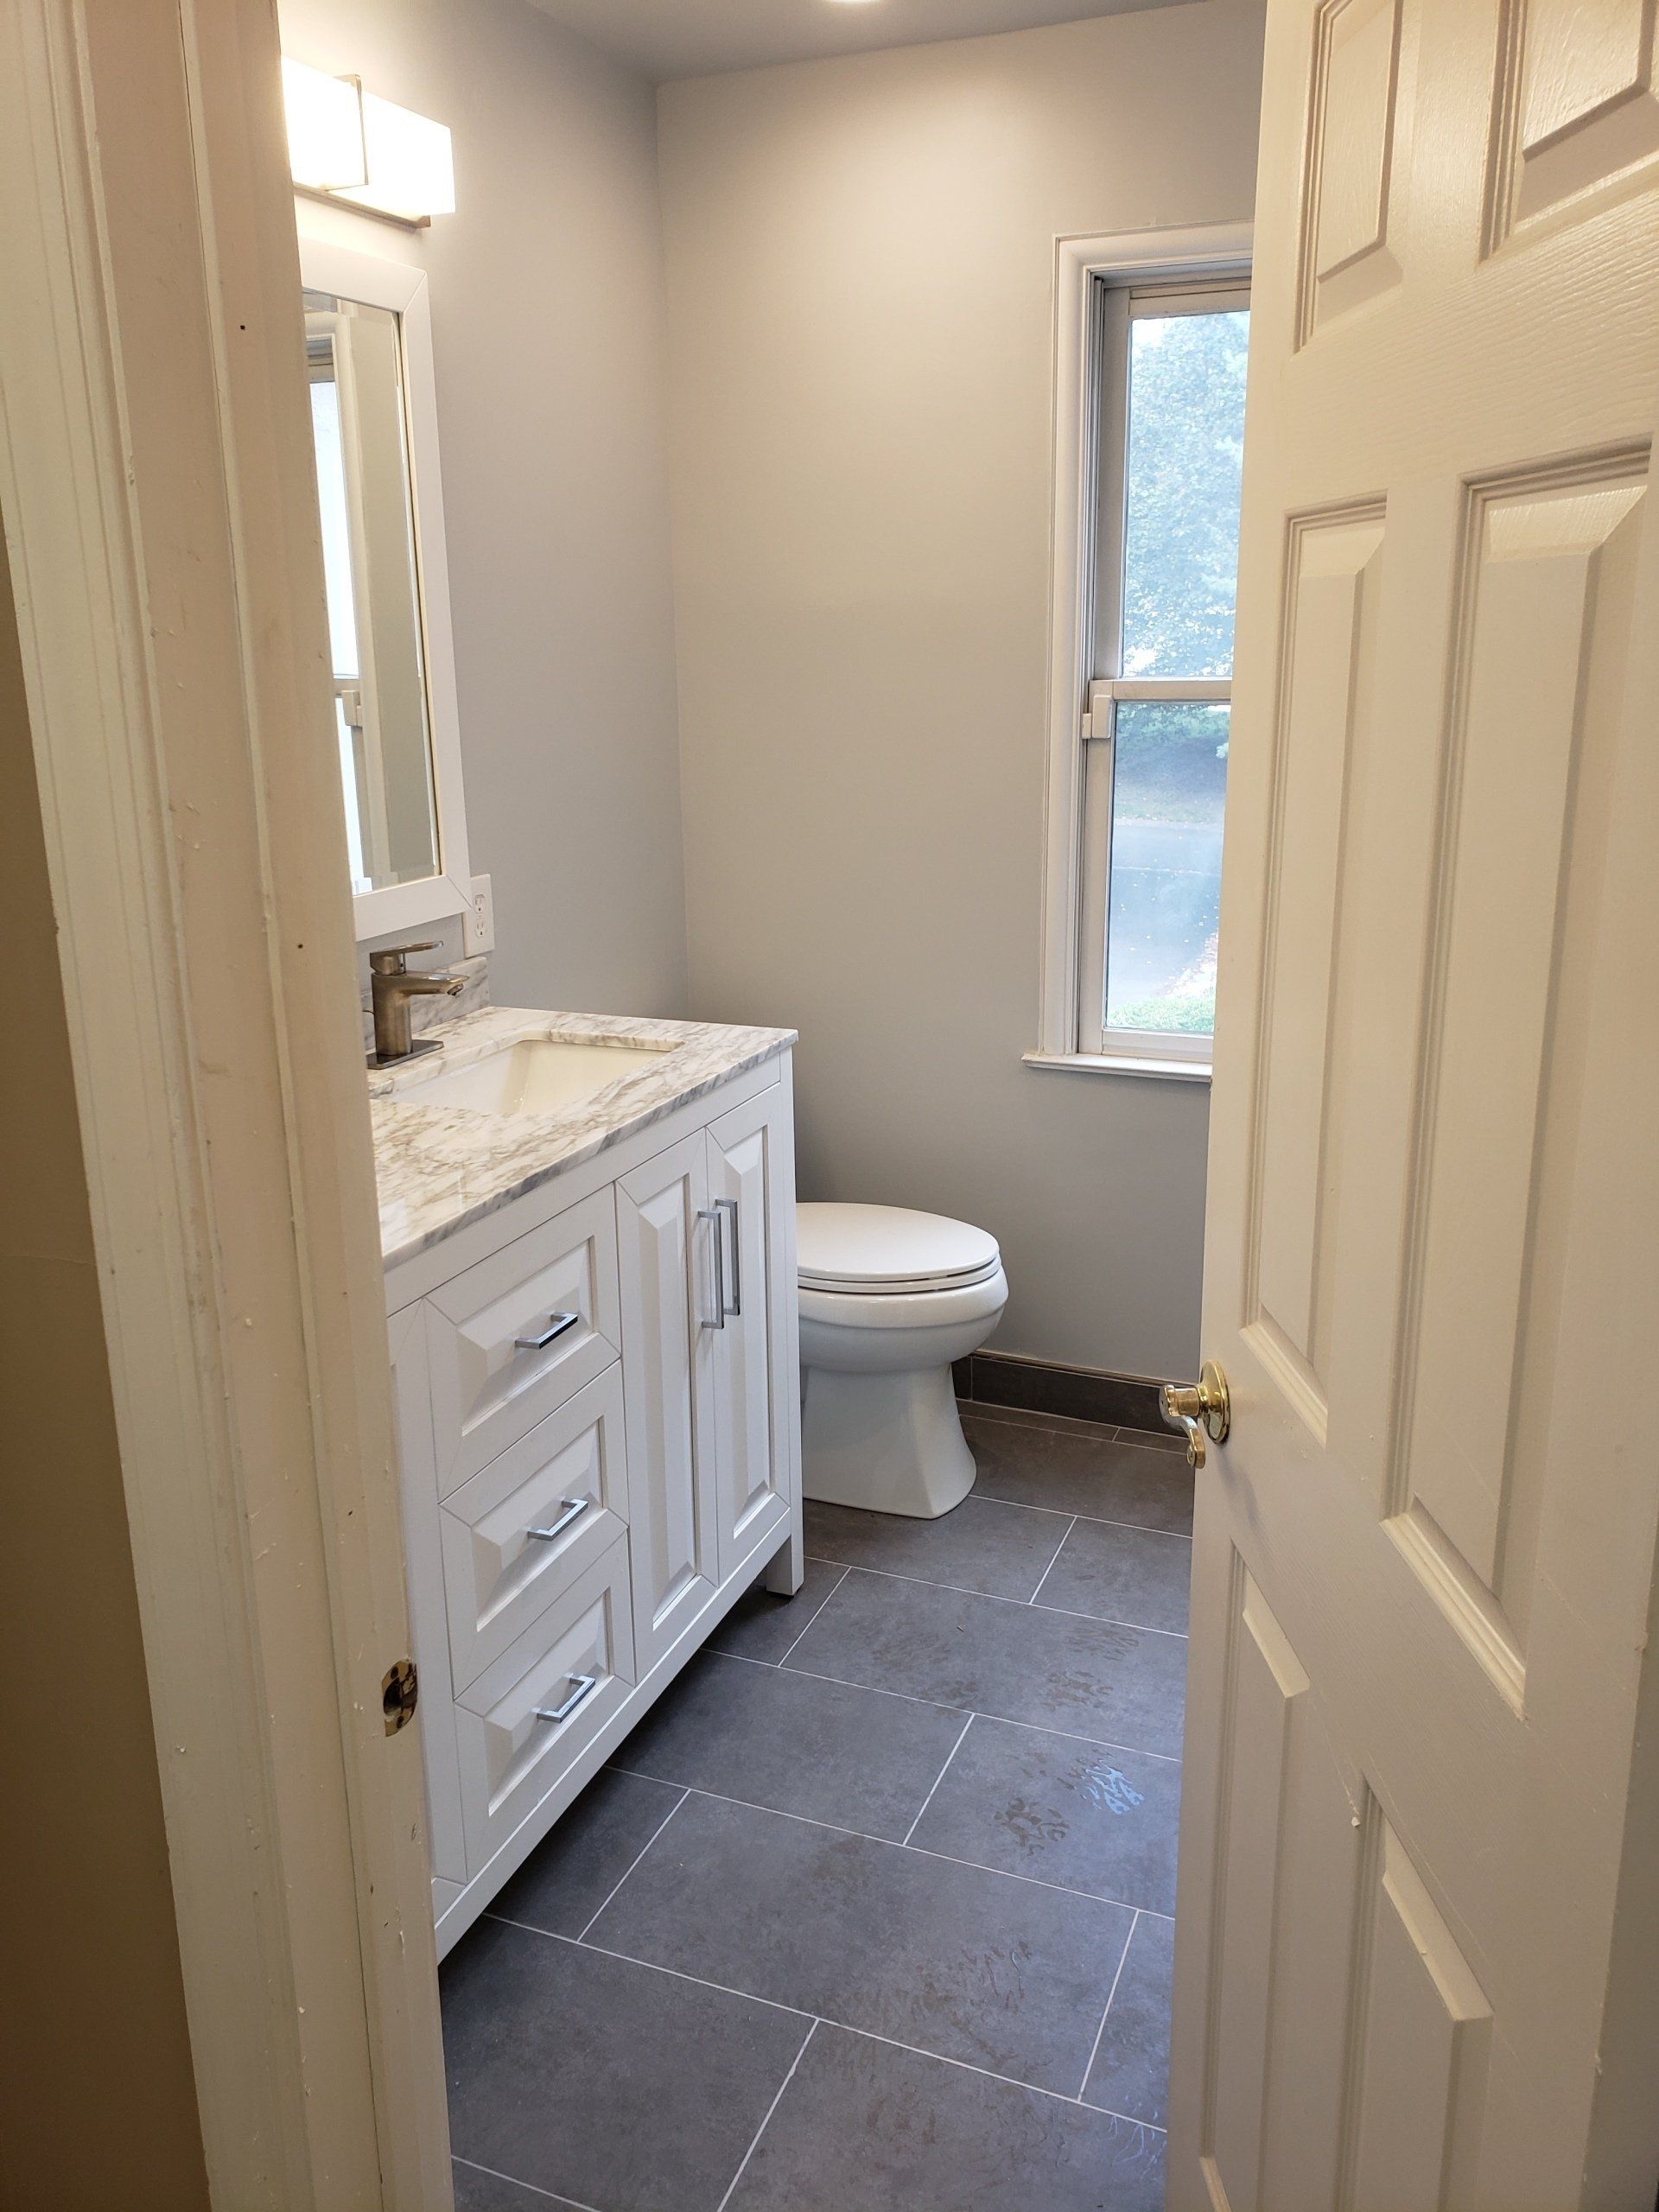 View of bathroom window, toilet, double sink vanity and modern style large format tile in elkins park bathroom remodel